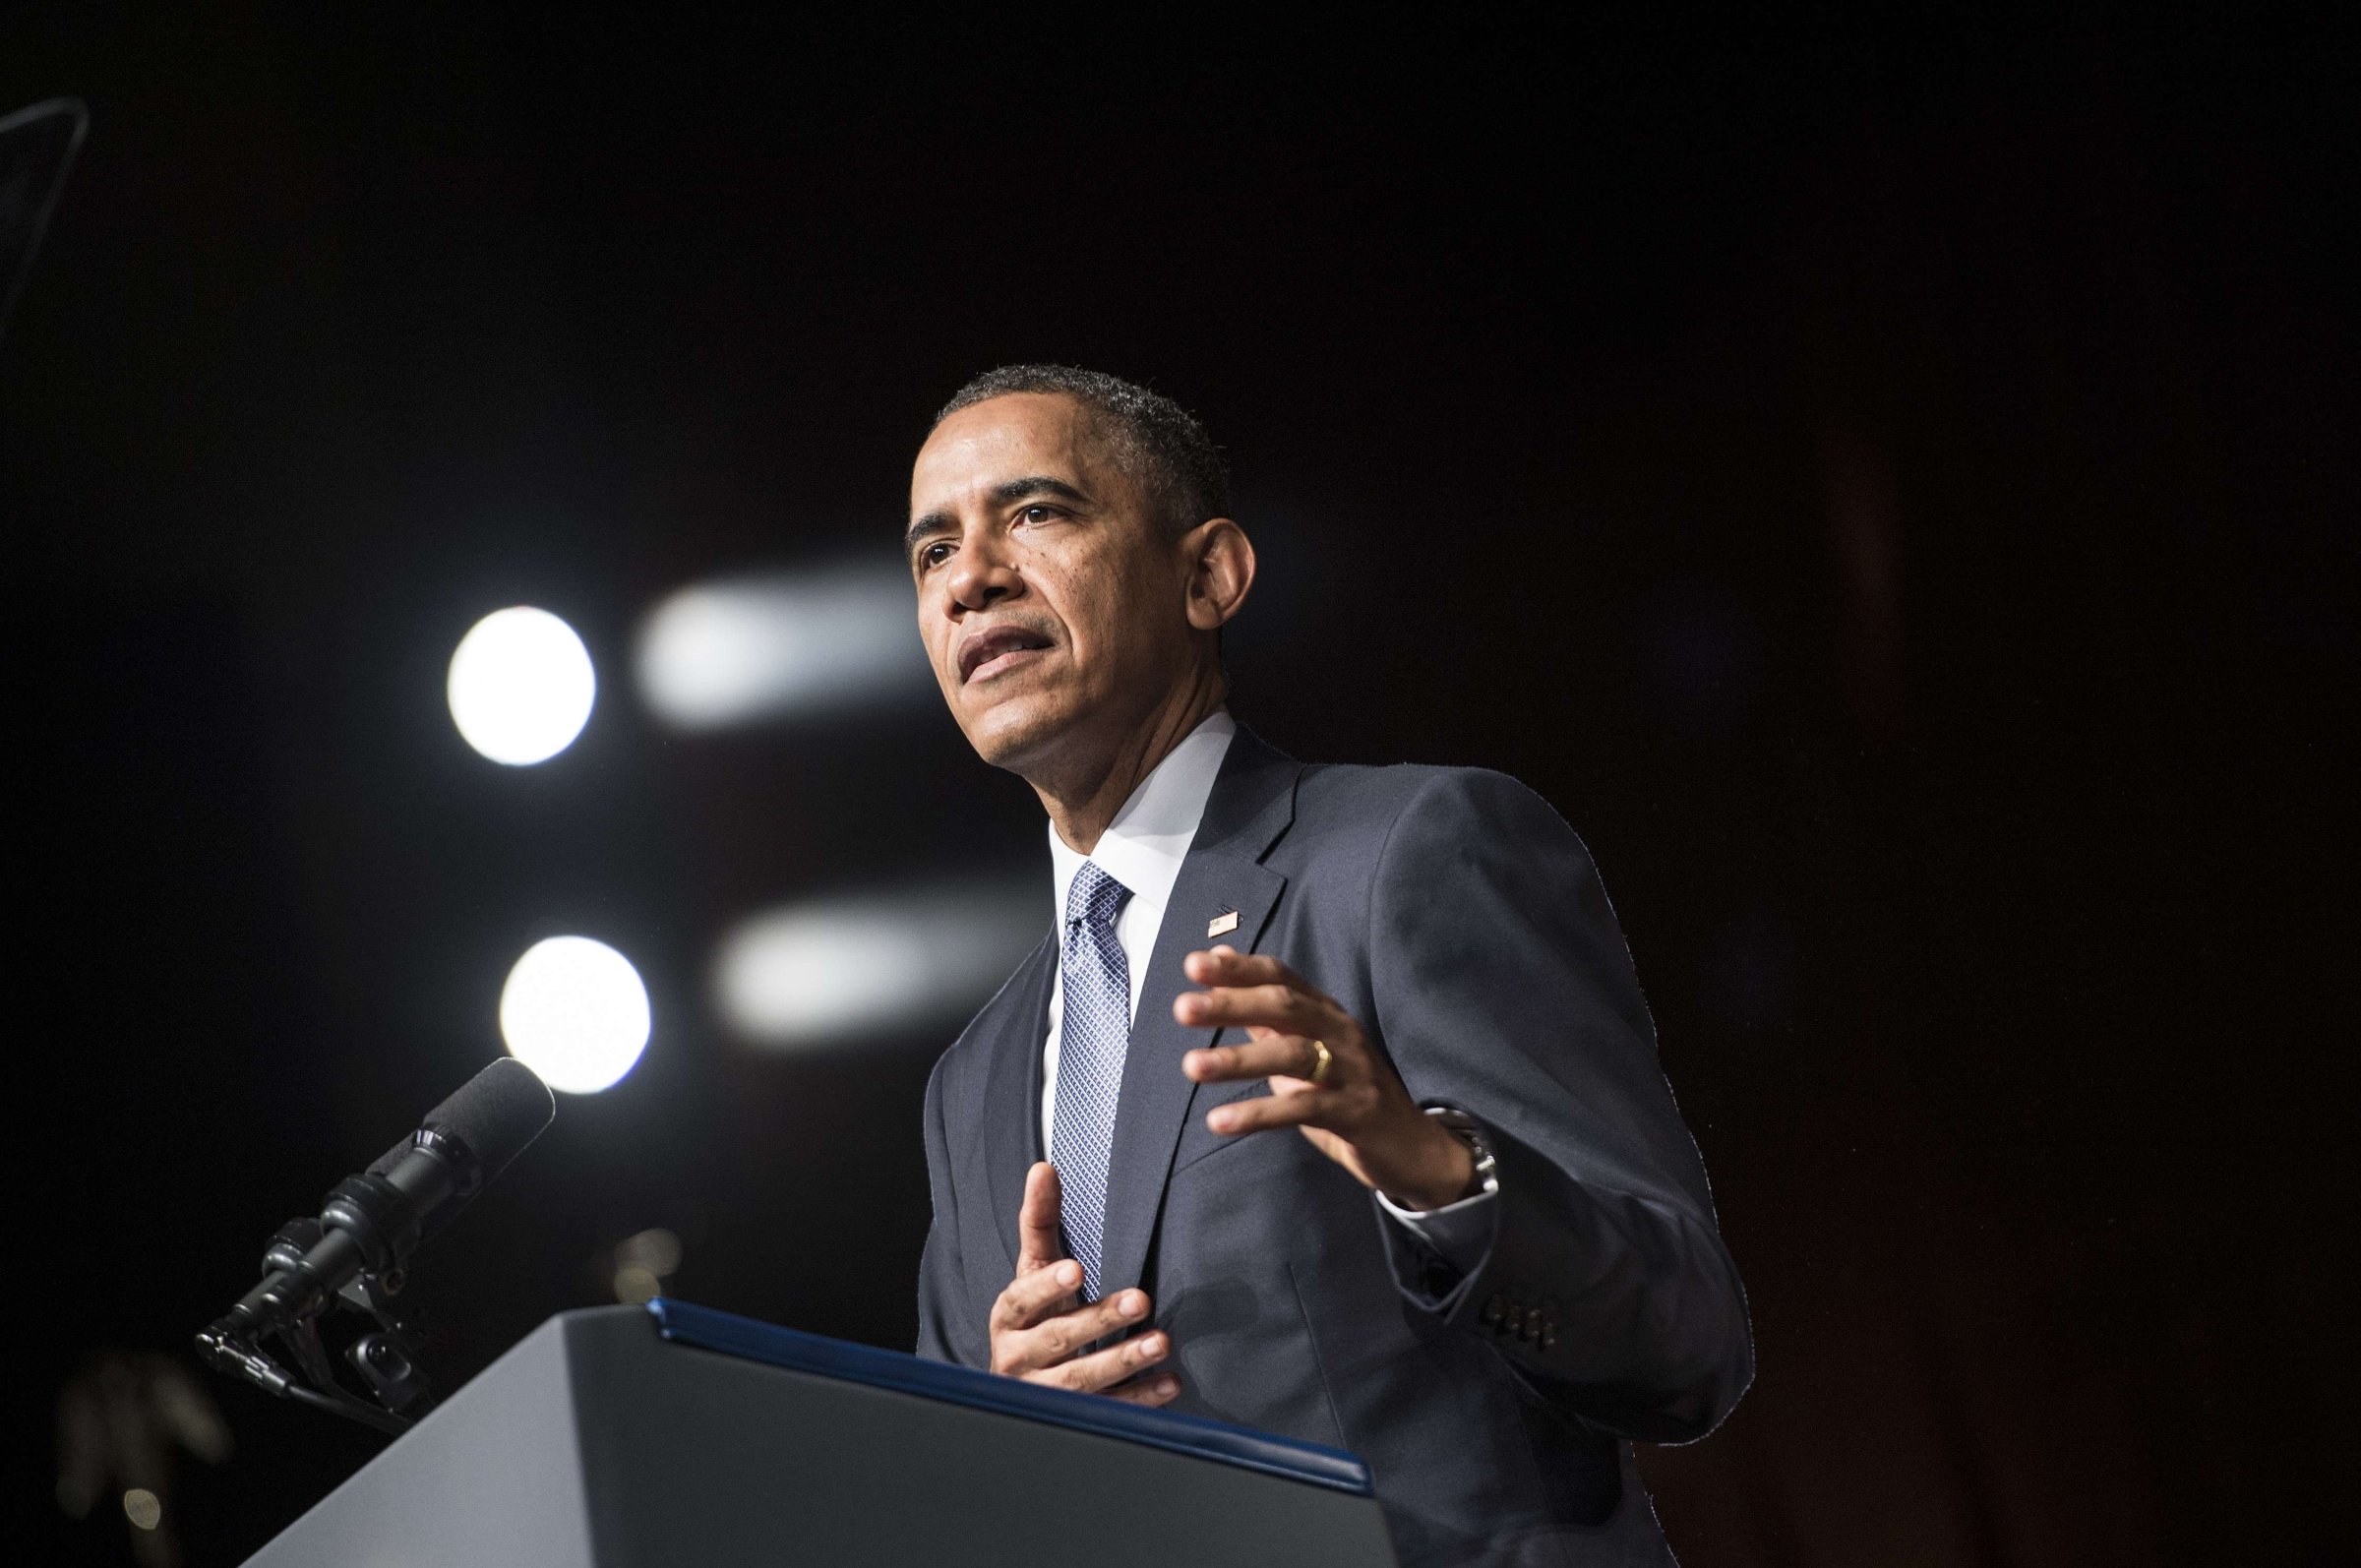 President Barack Obama speaks at the Lyndon B. Johnson Presidential Library April 10, 2014 in Austin, Texas.